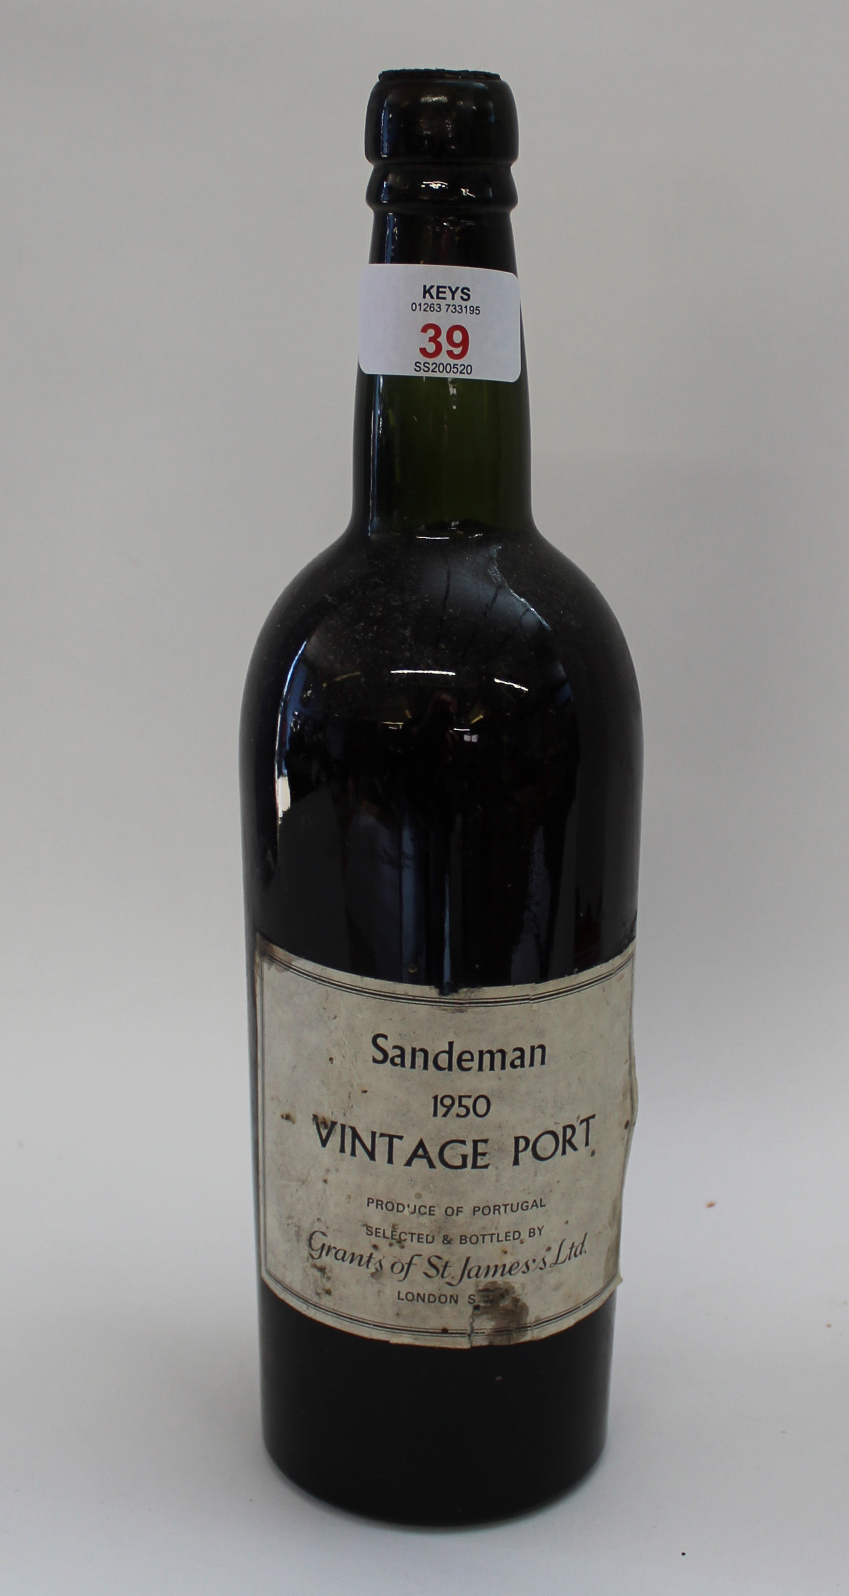 1950 Sandeman Vintage Port, one bottle.